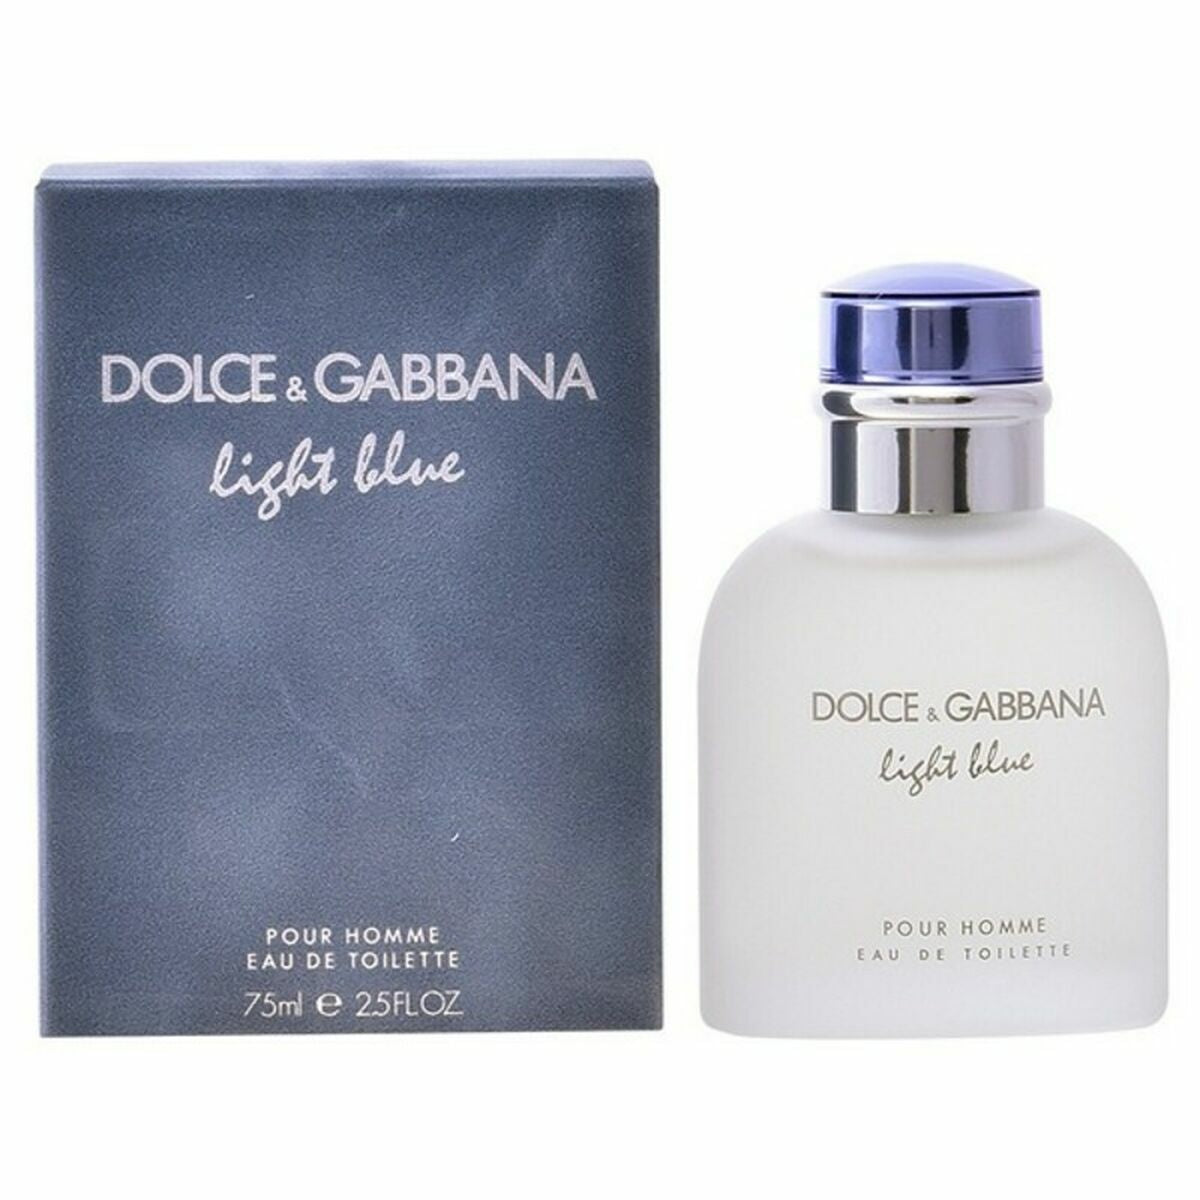 Miesten hajuvesi Dolce & Gabbana Edt vaaleansininen kaata Homme 125 ml